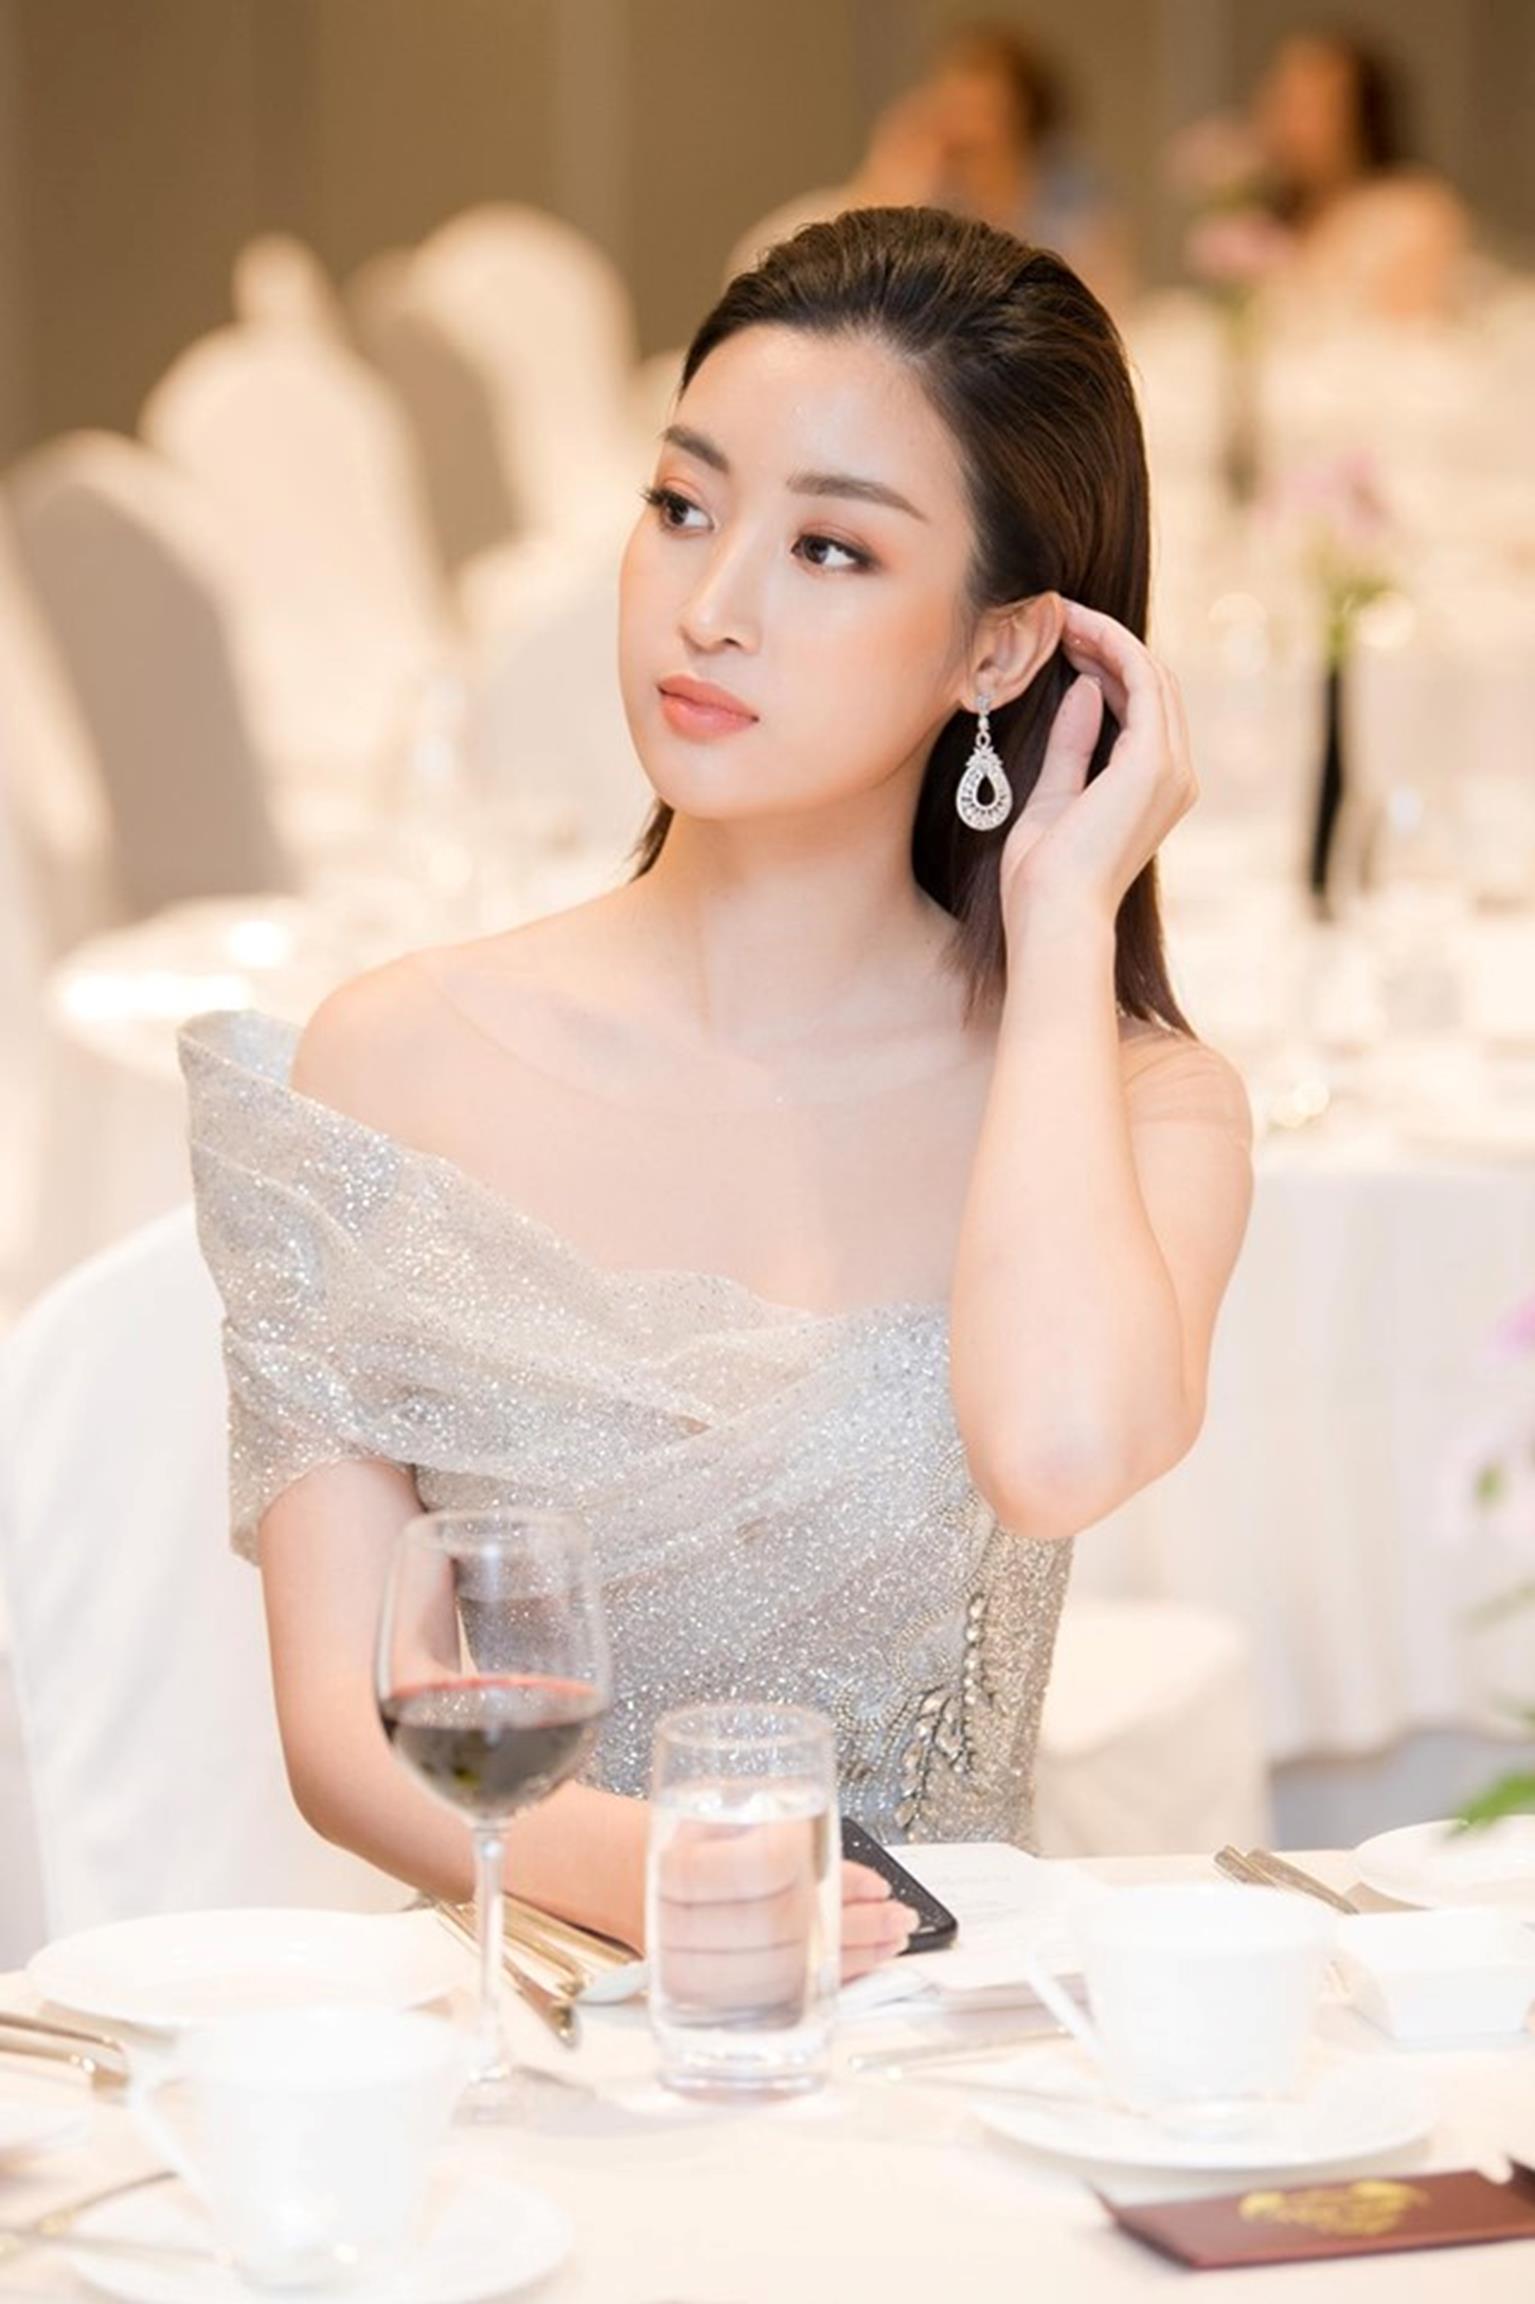 Hoa hậu Đỗ Mỹ Linh mặc đẹp tựa nữ thần, phớt lờ ồn ào bủa vây?-3